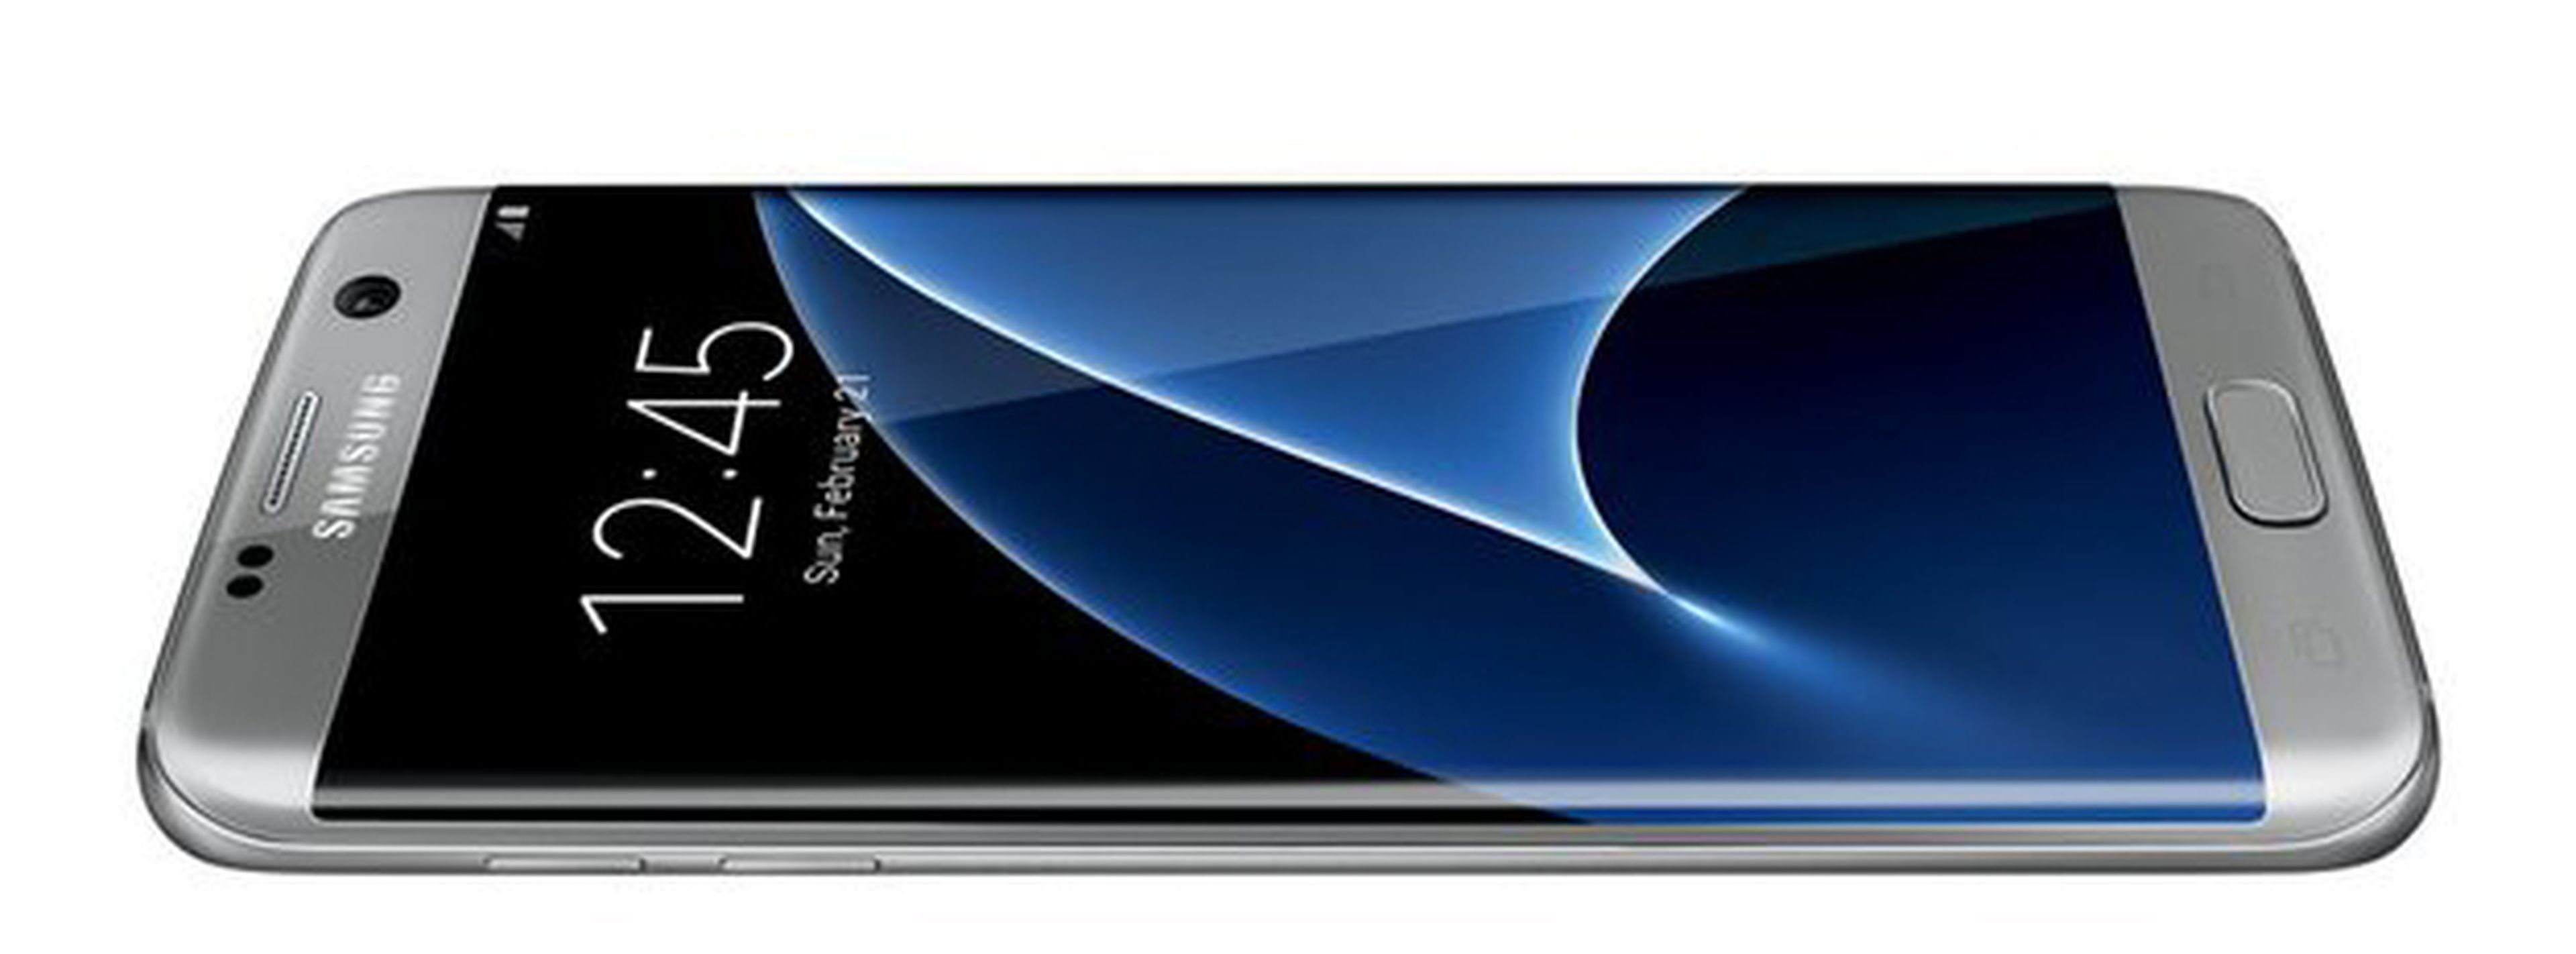 Información filtrada del Samsung Galaxy S7